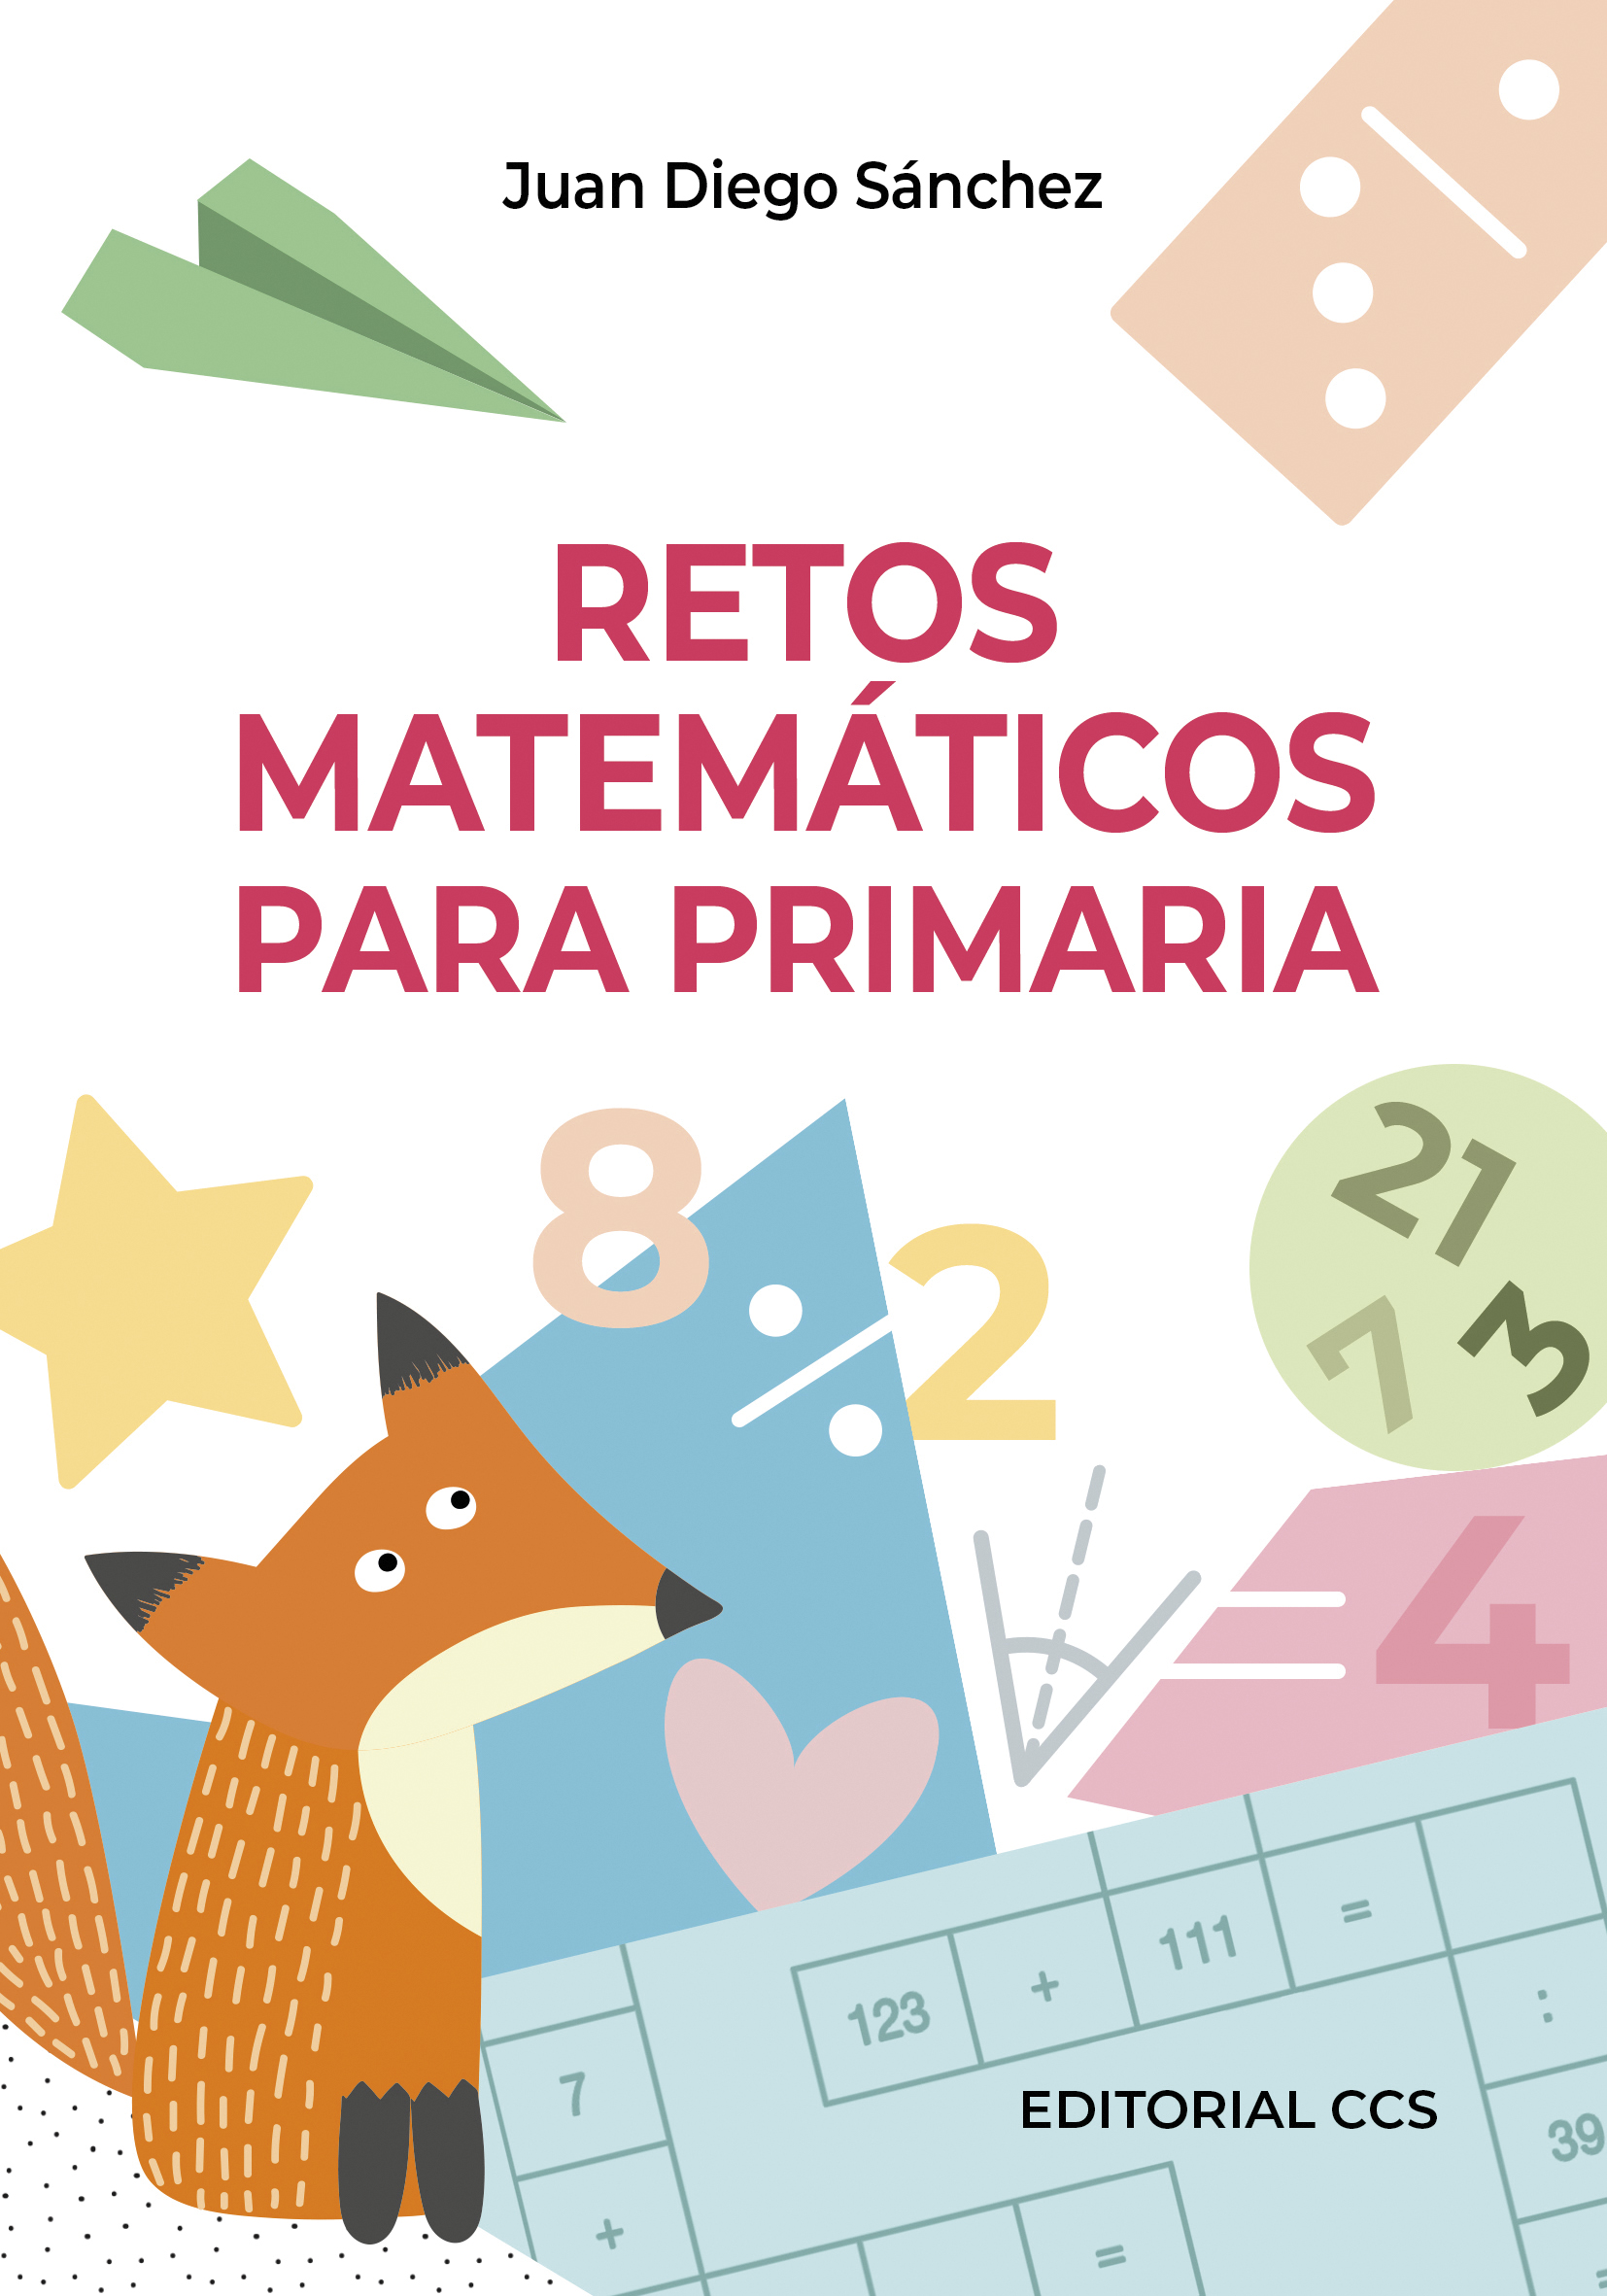 Editorial CCS - Libro: RETOS MATEMÁTICOS PARA PRIMARIA